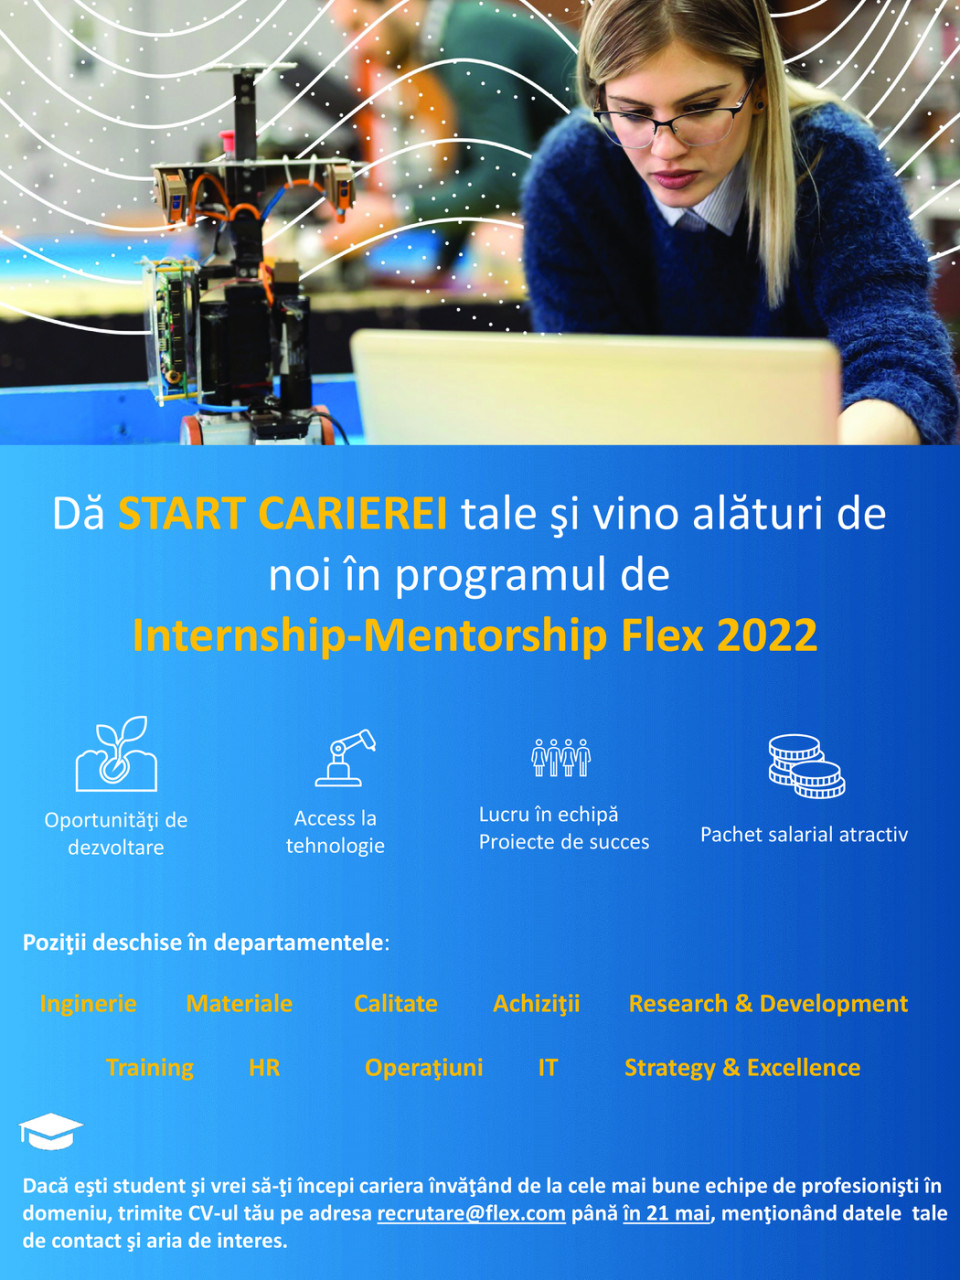 Internship-Mentorship Flex 2022